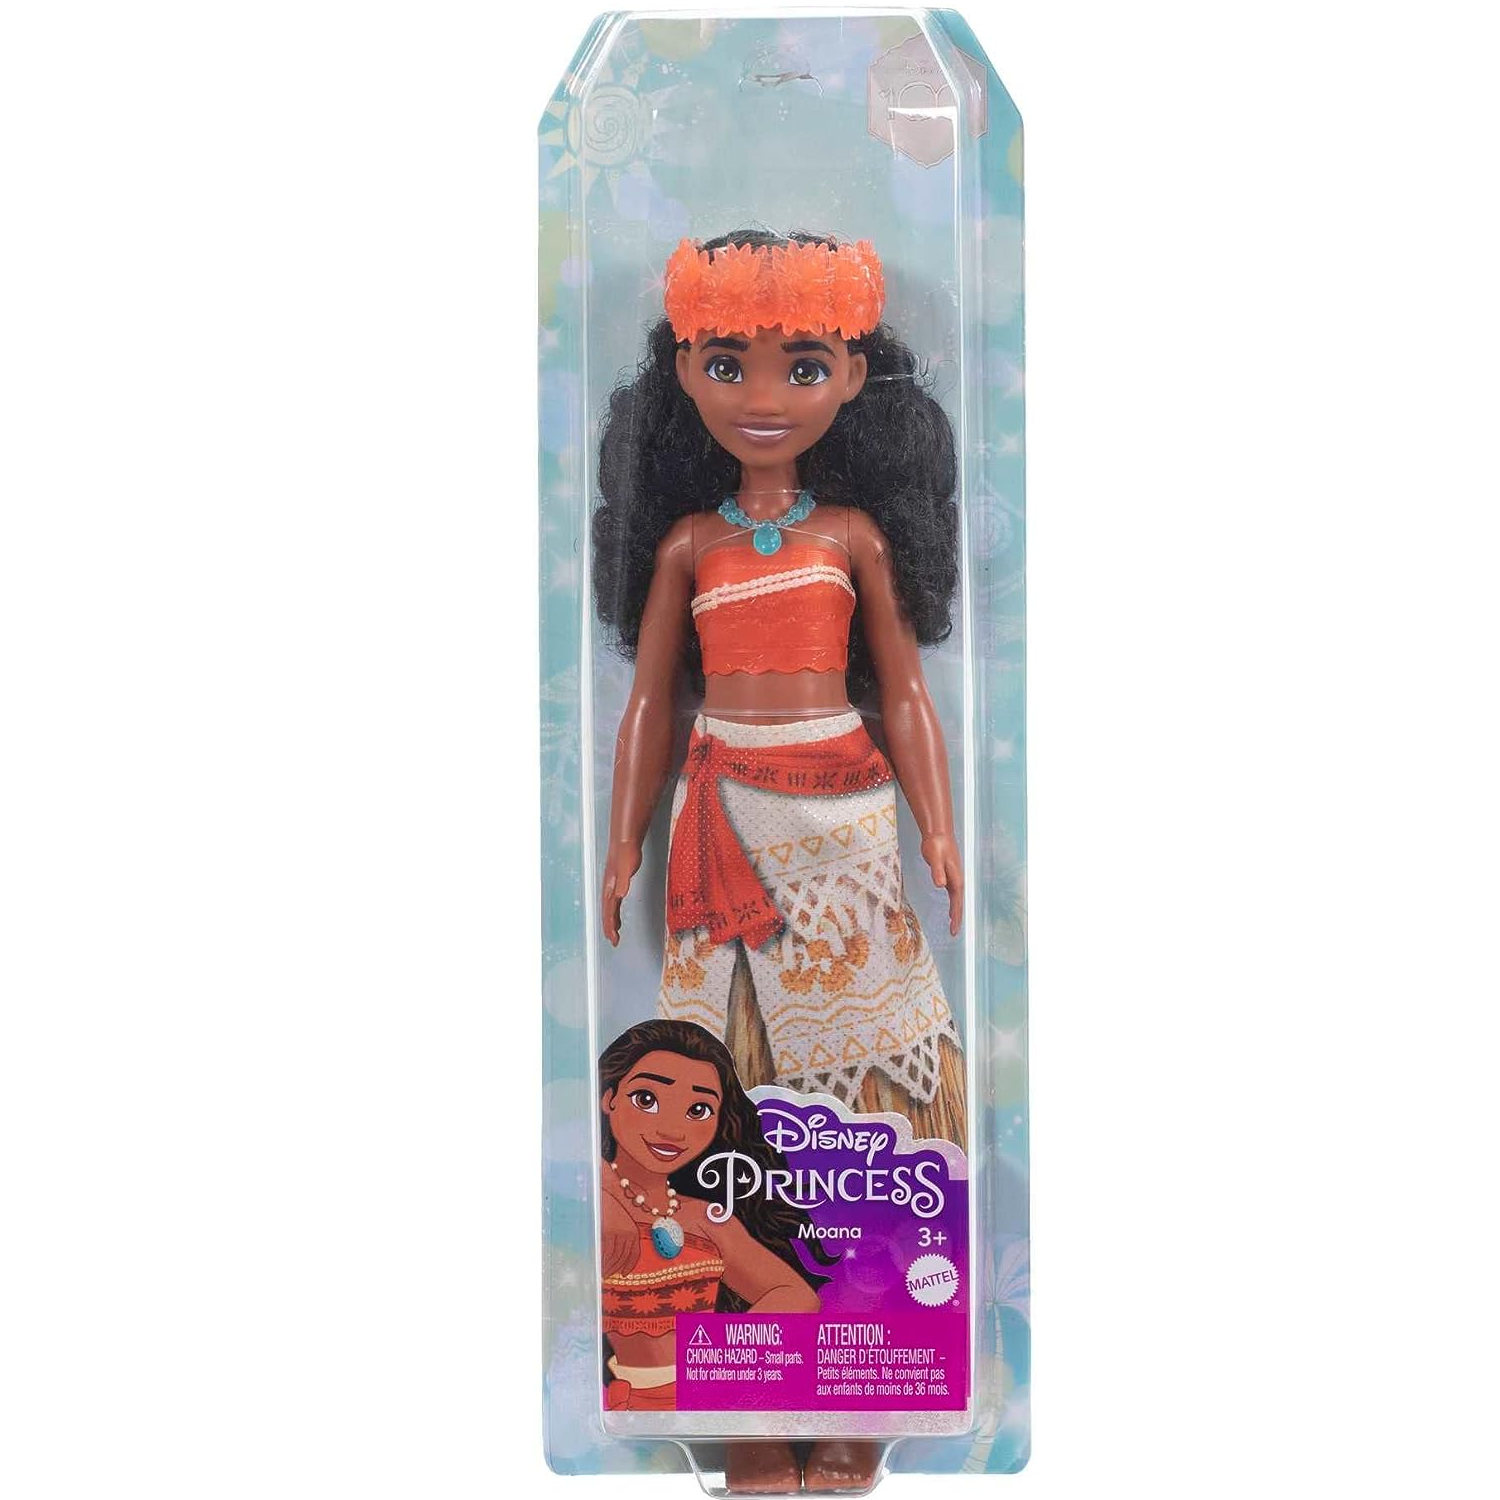 Novo Closet de Luxo da Barbie com Boneca Mattel - Fátima Criança